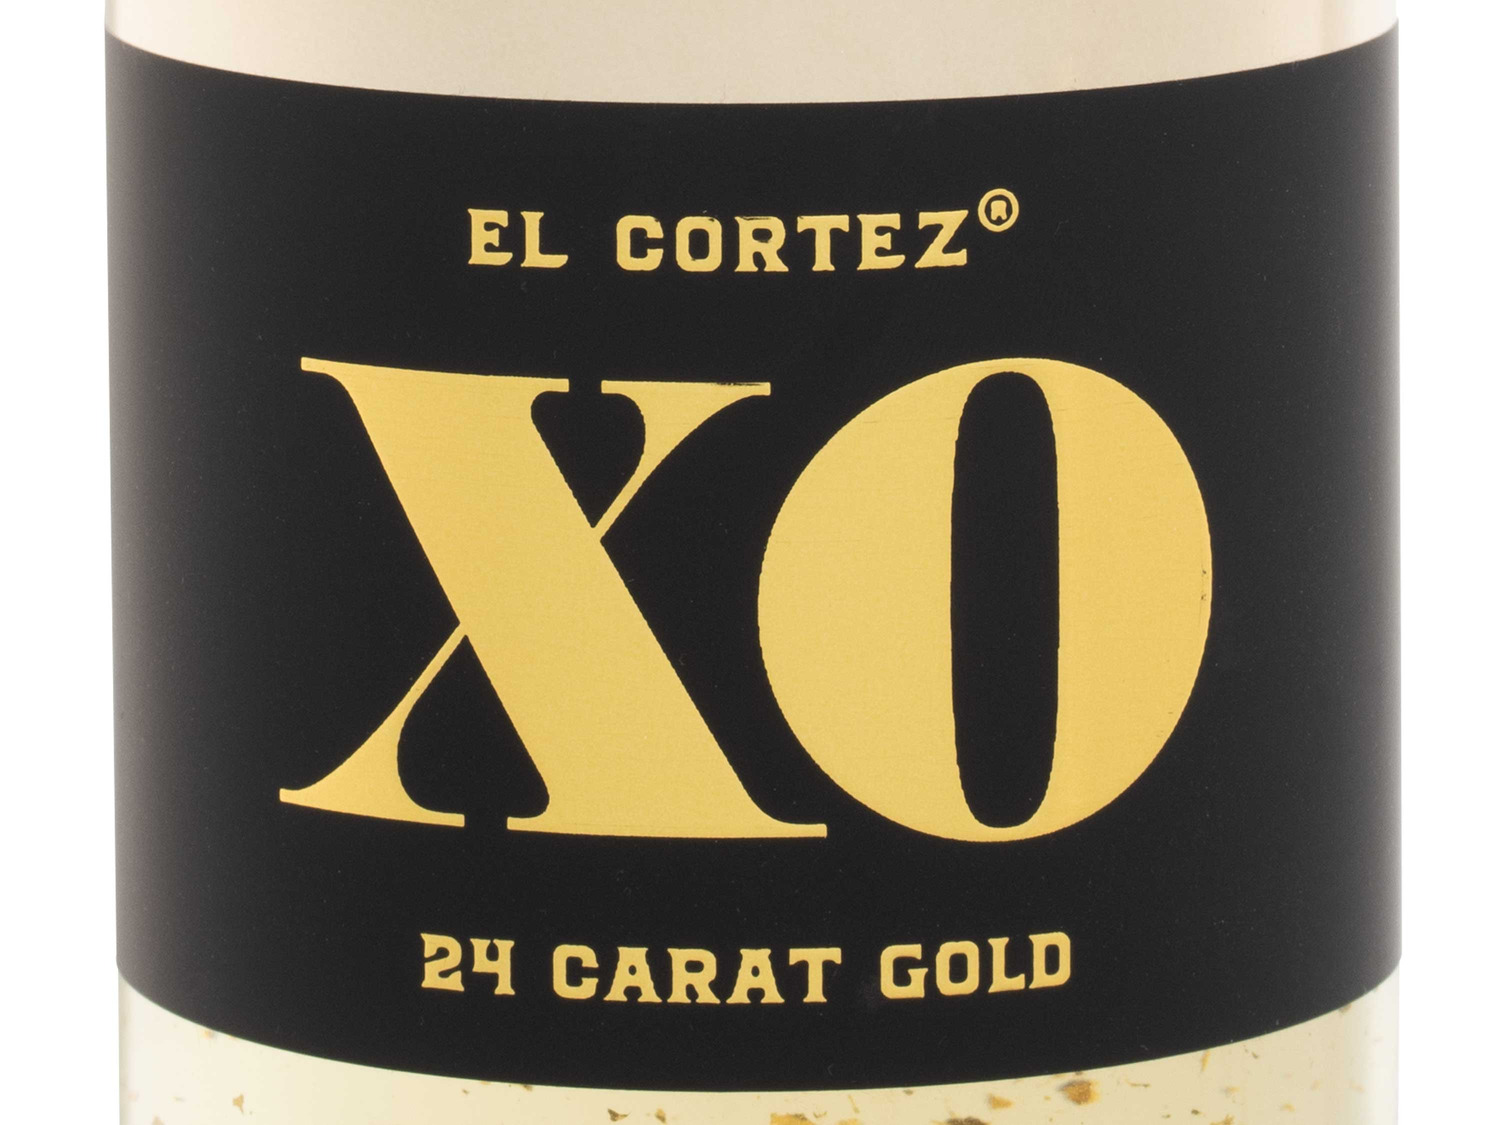 El Cortez XO Aromatisiertes 24K schaumweinhaltig… Gold